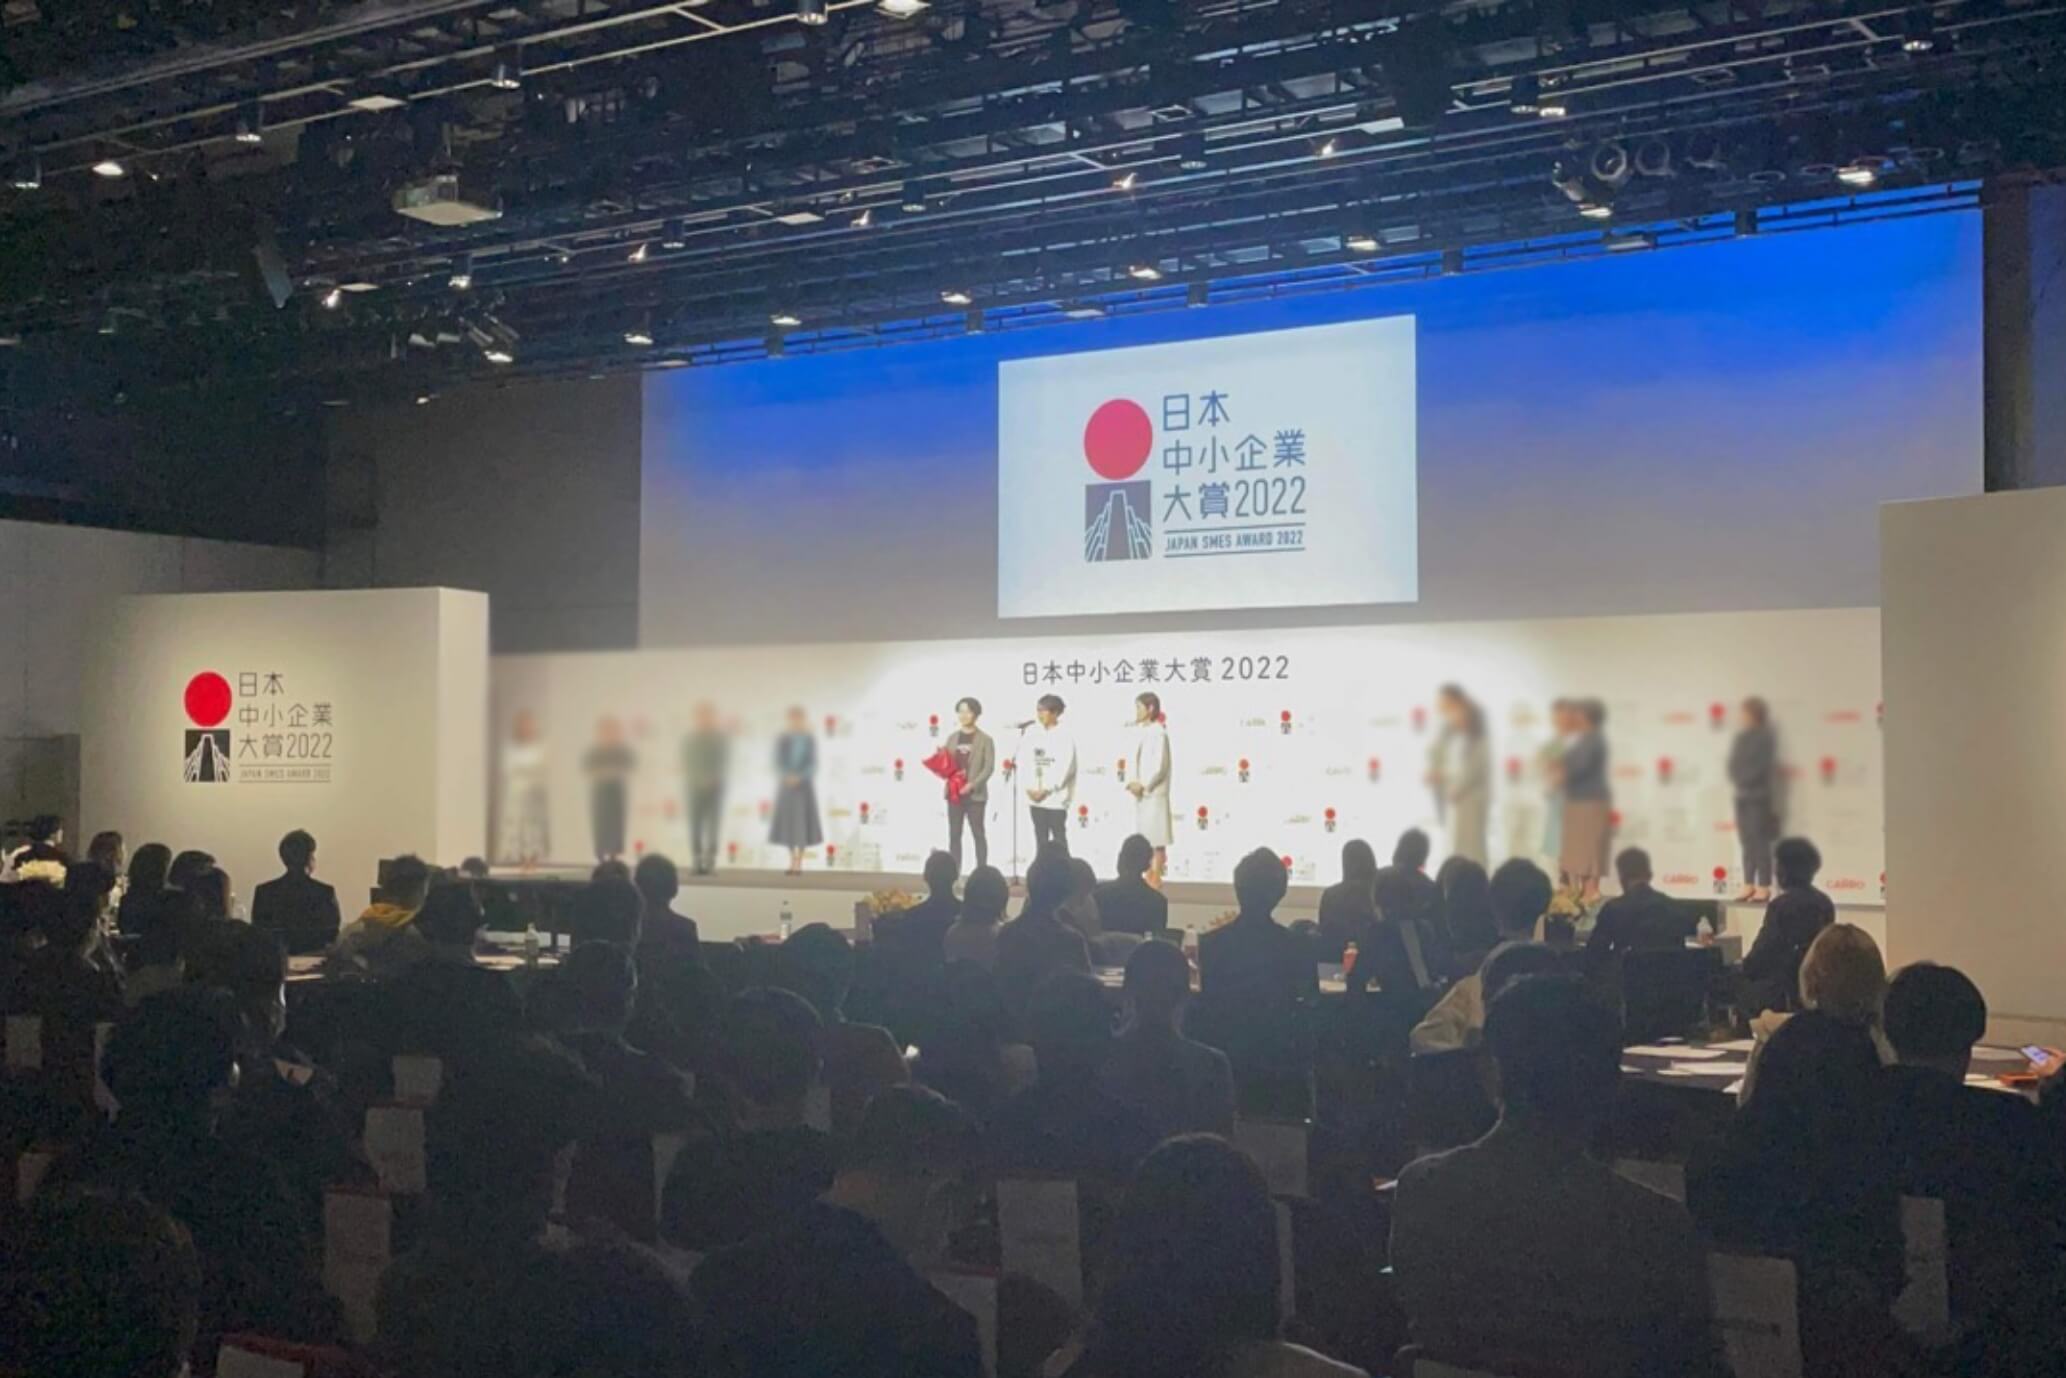 日本中小企業大賞2022授賞式の様子